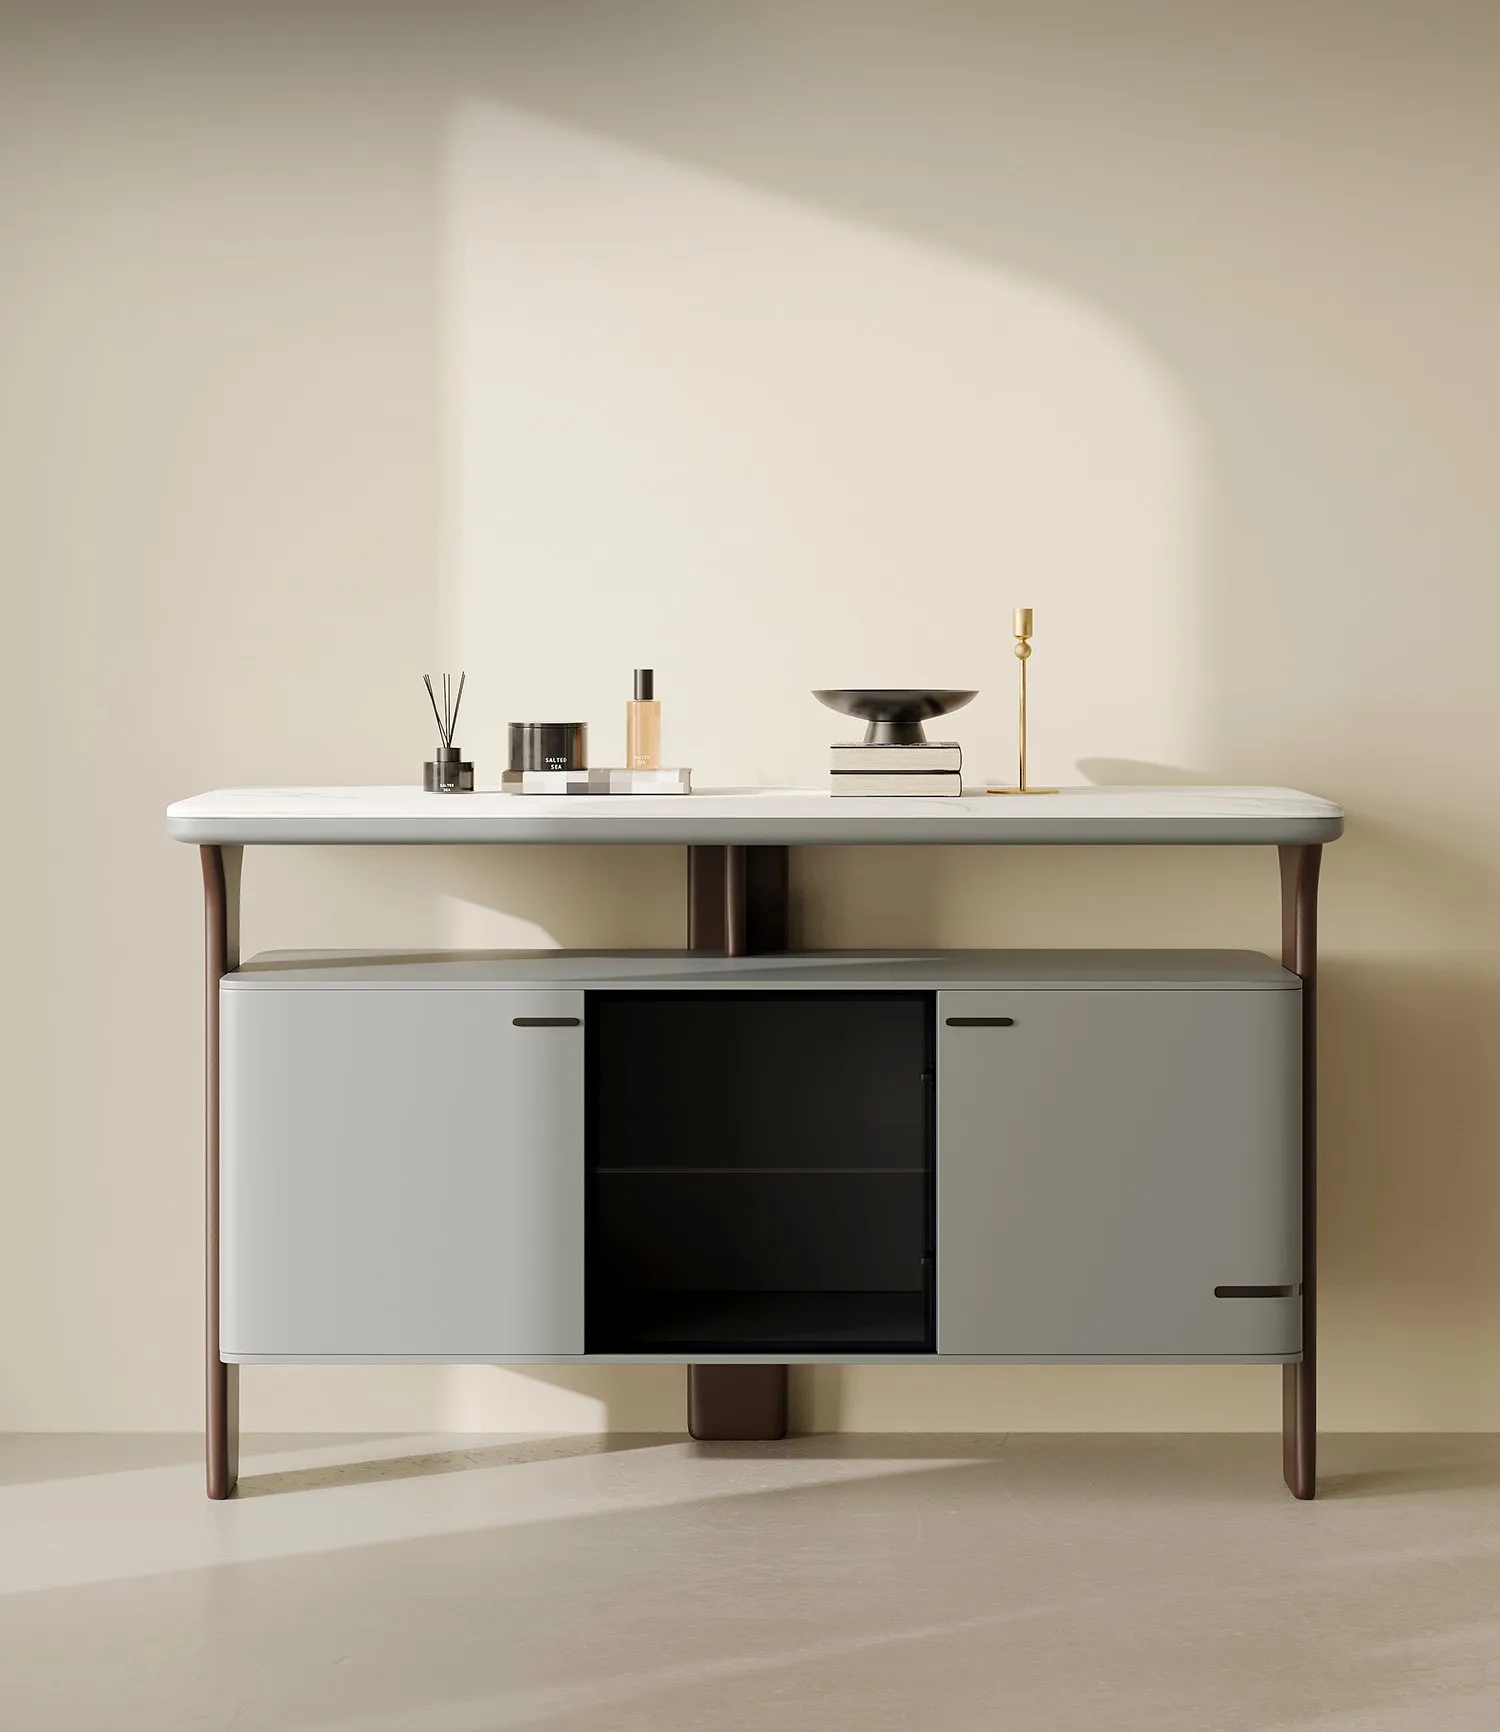 Модерен и минималистичен мрамор шкаф за съхранение на вещи за домашно използване, с висока стена шкаф и маса за странично шкафче0